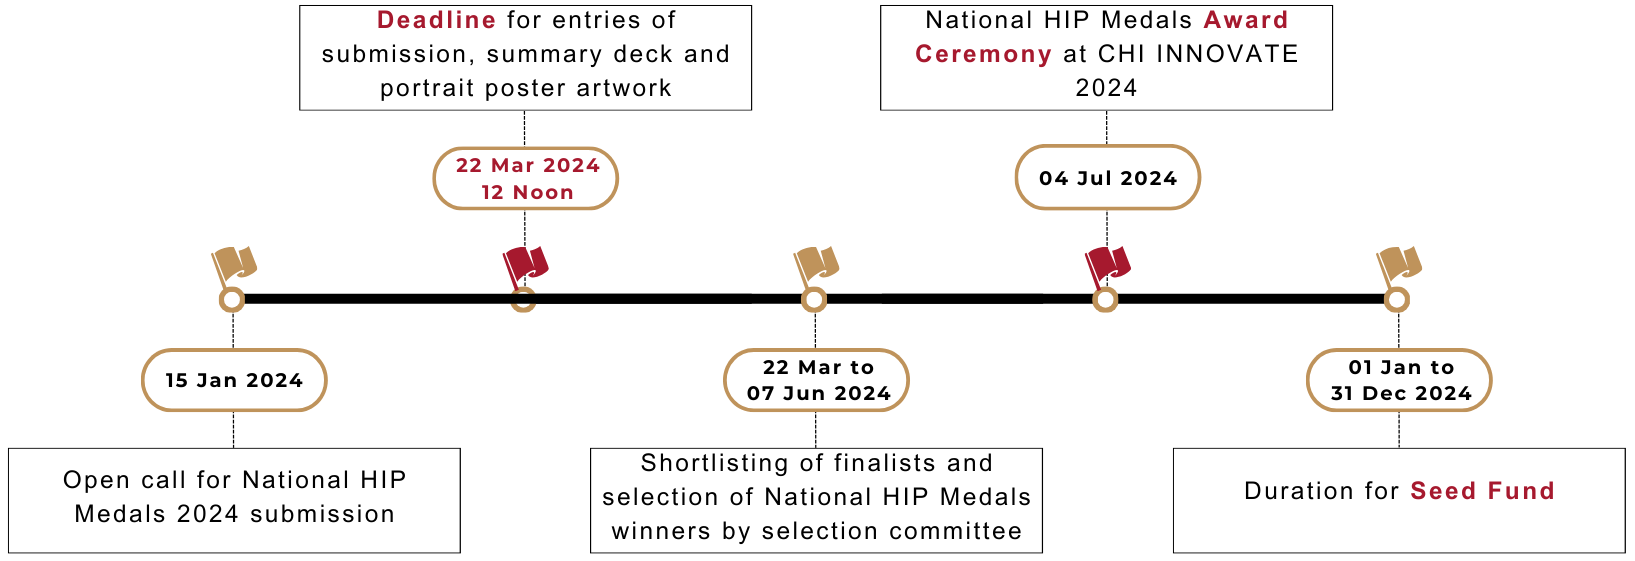 NHIP_2024_Major_Timeline_Final